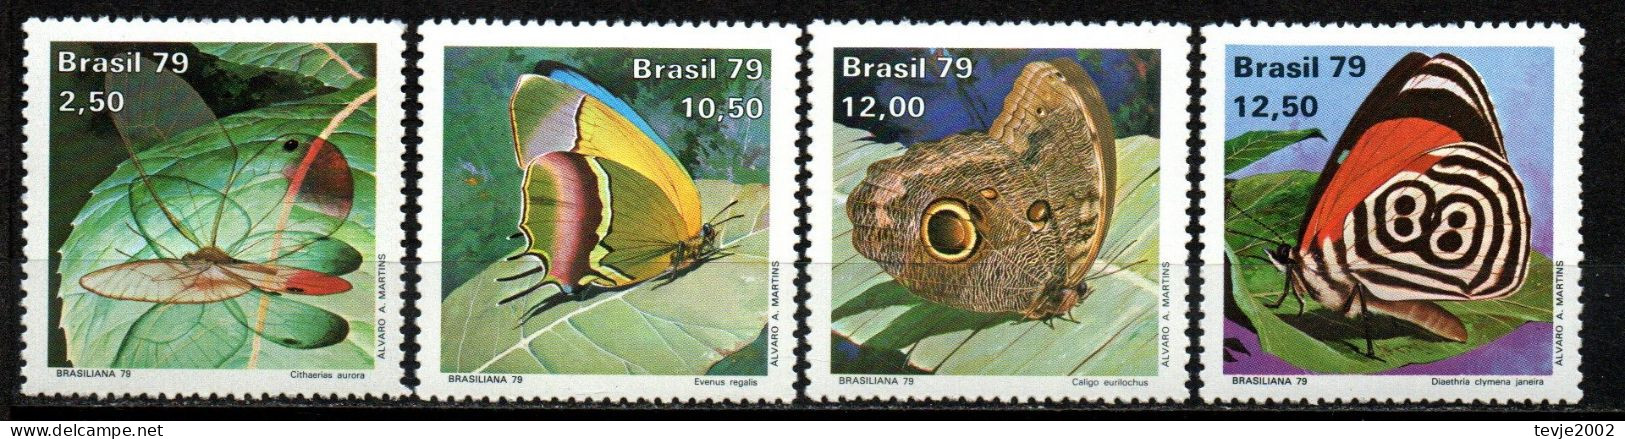 Brasilien 1979 - Mi.Nr. 1716 - 1719 - Postfrisch MNH - Tiere Animals Schmetterlinge Butterflies - Schmetterlinge